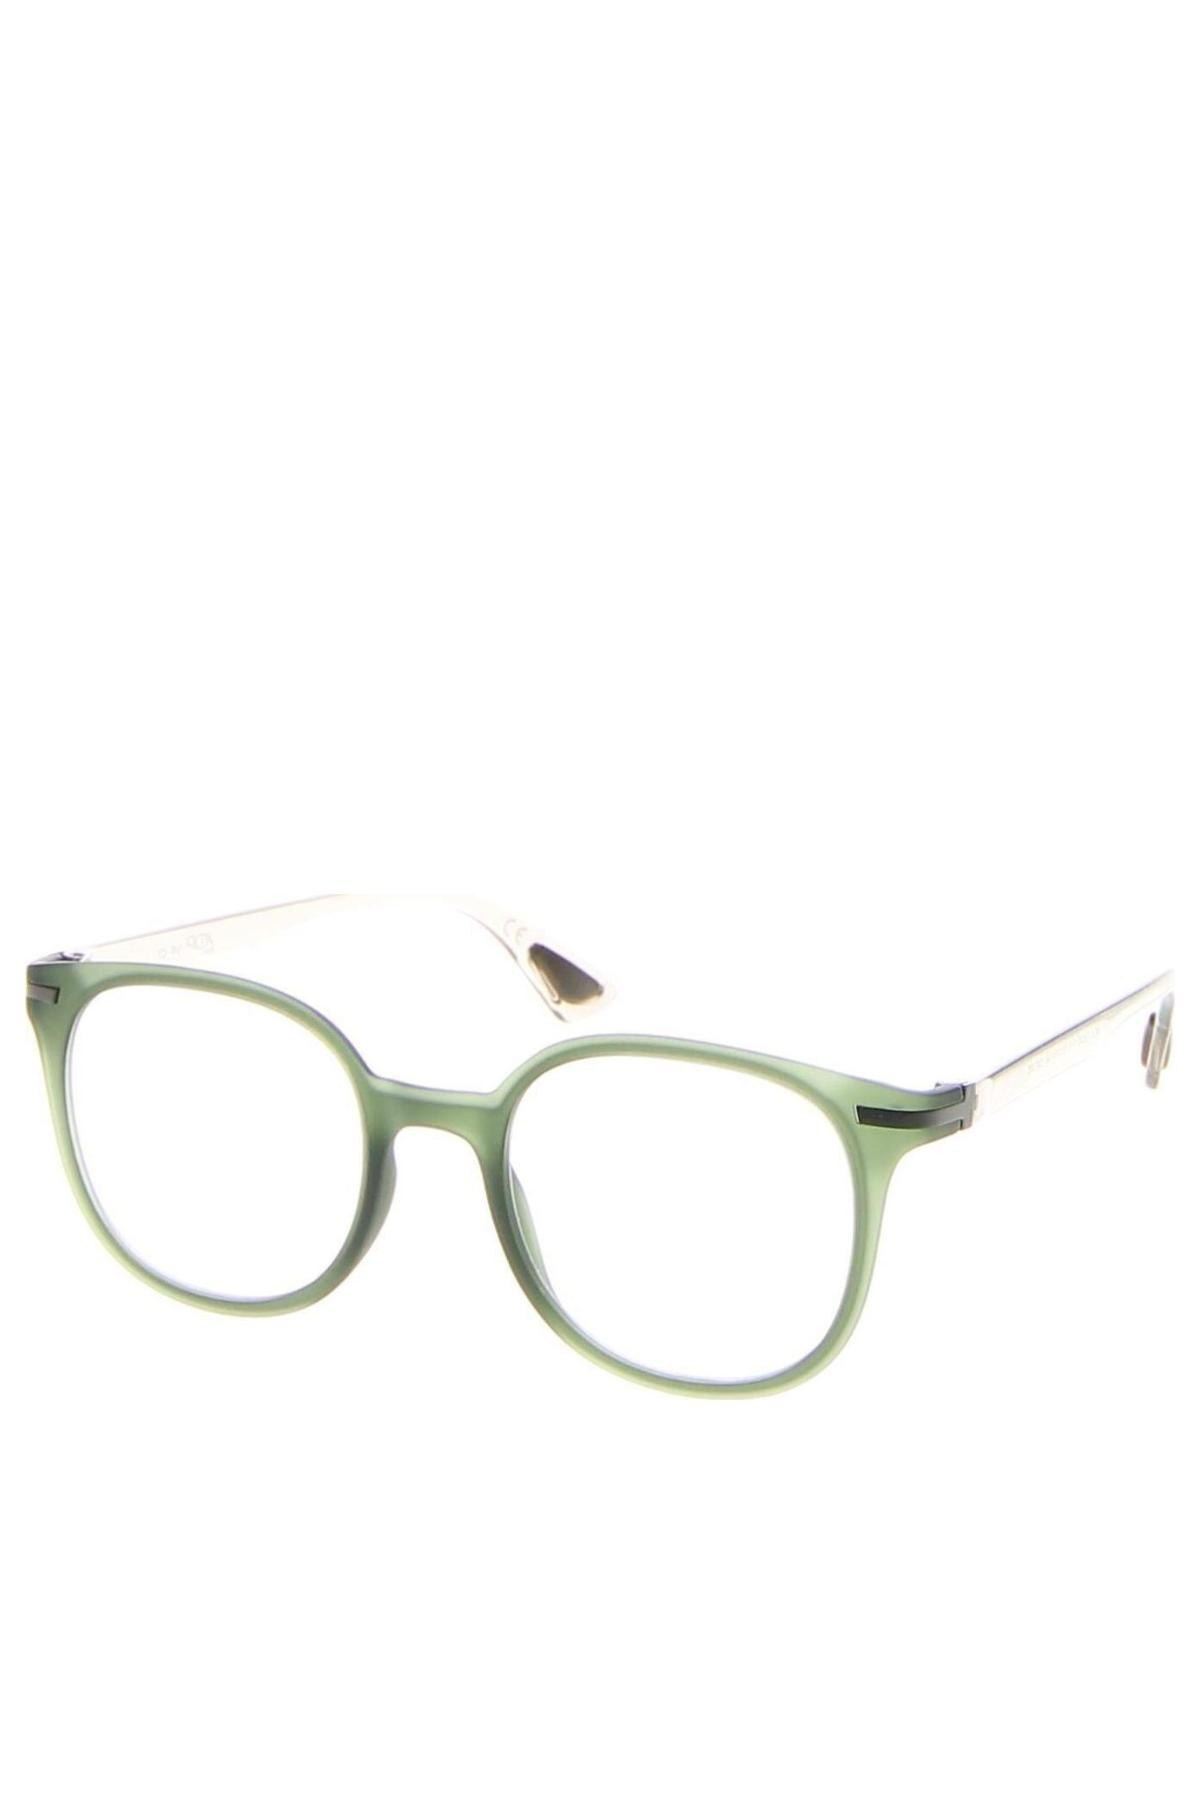 Szemüvegkeretek AirDP, Szín Zöld, Ár 41 670 Ft